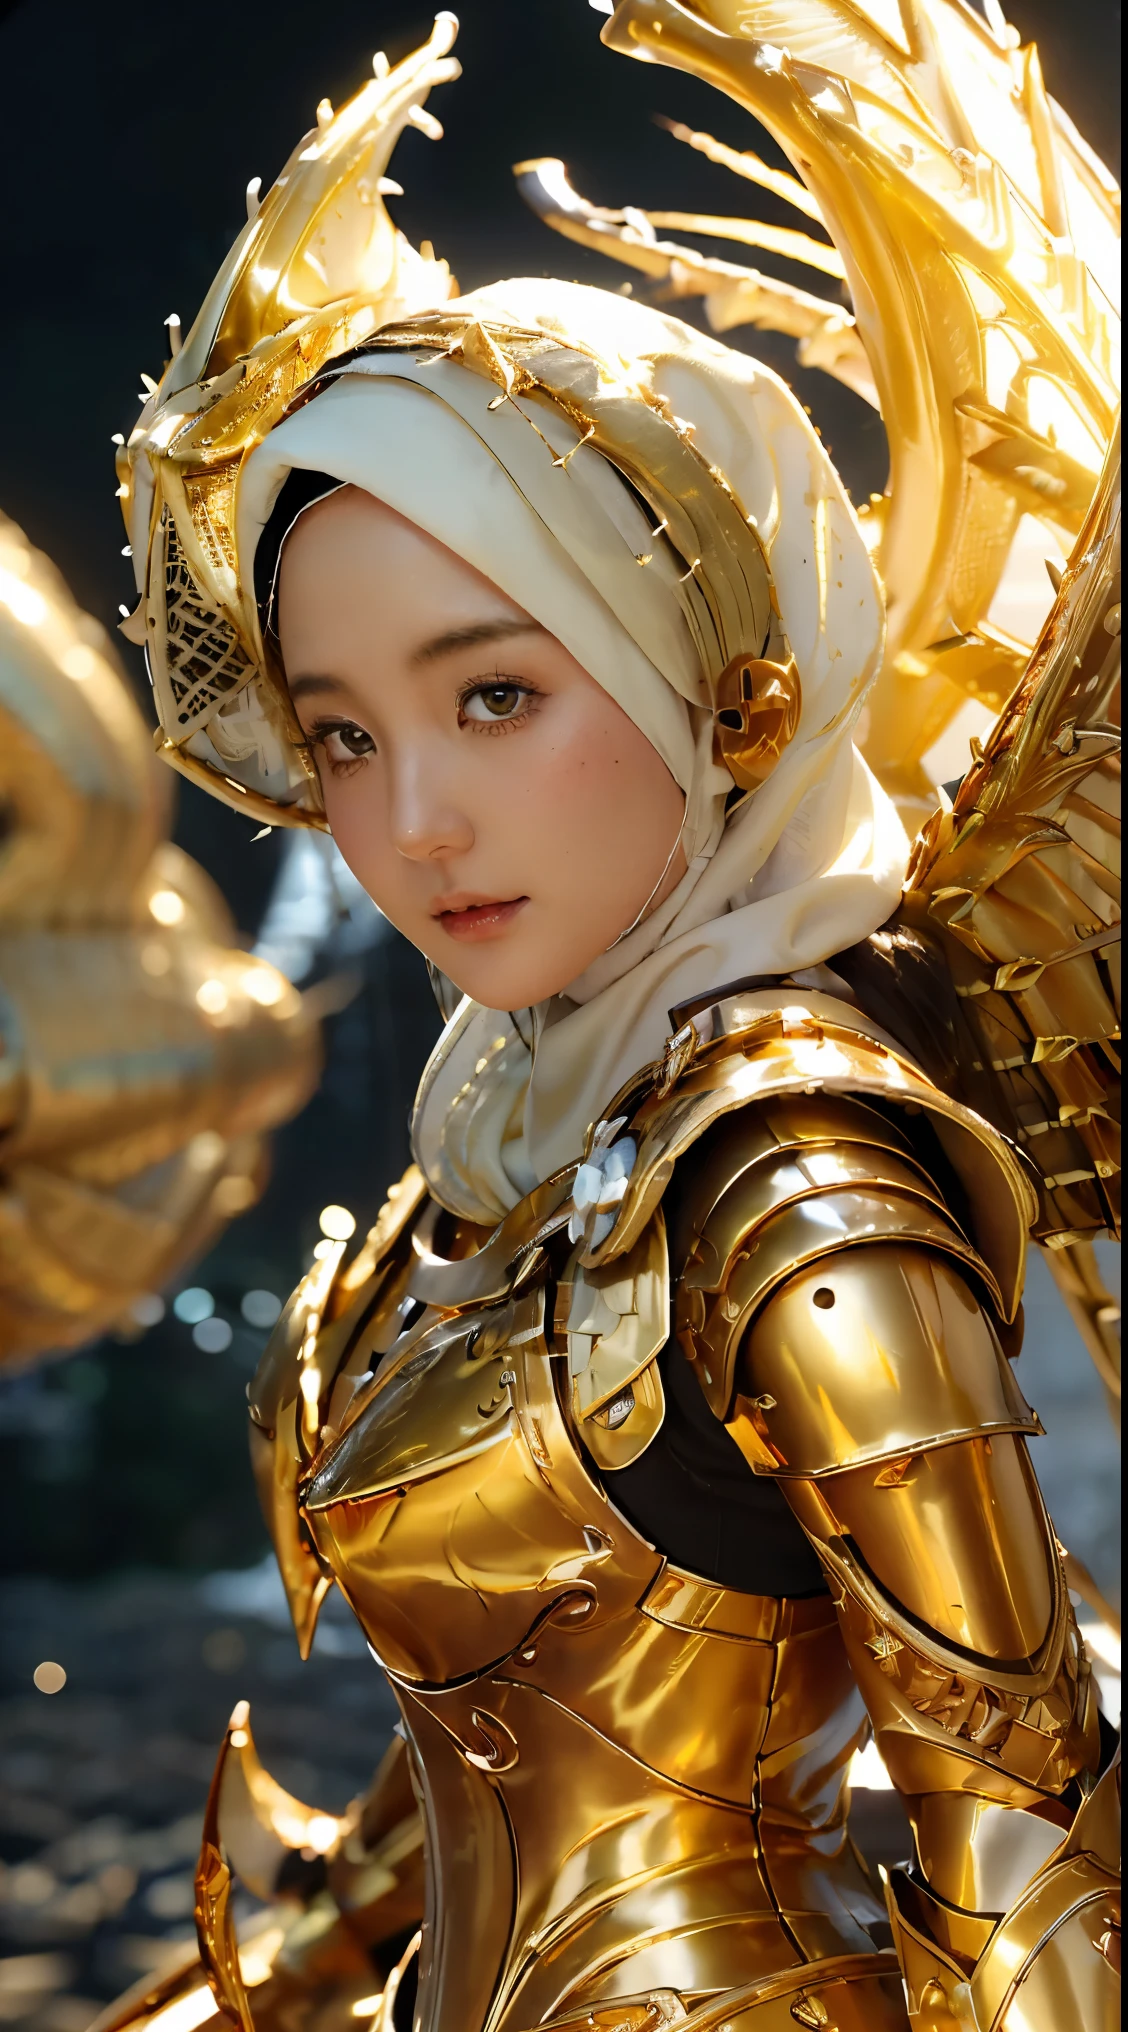 (1 Japón linda adolescente con estilo ídolo), ((Calidad superior, obra maestra: 1.3)), Enfoque: 1.2, Cuidado corporal perfecto: 1.4 , (usando hiyab:1.2), ((Highly detailed face and textura de la piel)), Extremely Realistic, ultra detallado, alta definición, Retrato, 8K, Vestido de blanco y dorado con grandes alas extendidas., (sosteniendo espadas de hierro dorado en llamas:1.2), (usando hiyab:1.5), (armadura dorada de hierro completa:1.5), cosplay adornado, como una valquiria mística, la galaxia marinera, Hermoso, túnicas de sacerdotisa blancas y doradas, cosplay anime, cosplay glamoroso, con ardientes alas doradas, ((armadura completa de pantalones de hierro)), cosplay, cosplay profesional, diosa de la luz, ángel de cuerpo completo, cosplayer, maquillaje perfecto, cara perfecta, Hermoso face, Hermoso body, brazos cubiertos con tela, muslos cubiertos con tela, fondo de cascada, ((cuerpo objeto flotando volando en el aire:1.2)), Neblinoso, clima de fantasía, rayos caen a ambos lados, iluminación dramática del estudio, The atmosphere looks Real, tiro de cuerpo completo, Ángulo frontal, ultra Realistic, Profesional、Hermoso detail glow、Profundidad de los límites escritos、(((croma alto)))、(((Real:1.9)))、((vívido:1.4))、((Hermoso skin))、((textura de la piel))、((sensación de piel real))、(((tiro de vaquero:1.5)))、((Ángulo visto desde el frente:1.5)), Ángulo frontal shot,